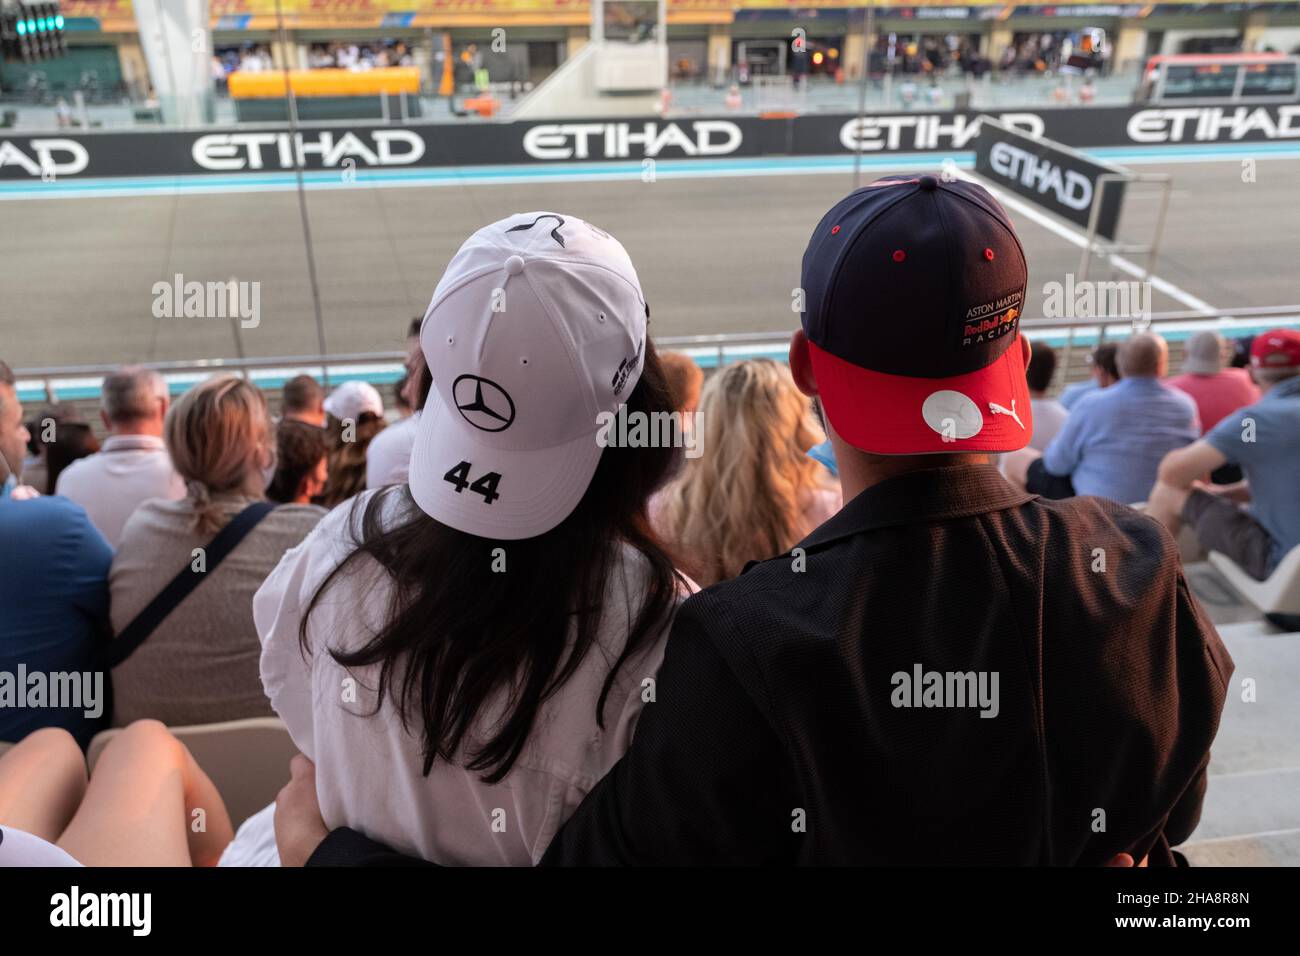 Les fans de deux équipes rivales Redbull et Mercedes sont le couple bien-aimé regardant la course de formule portant des chapeaux du Grand Prix d'Abu Dhabi F1 Banque D'Images